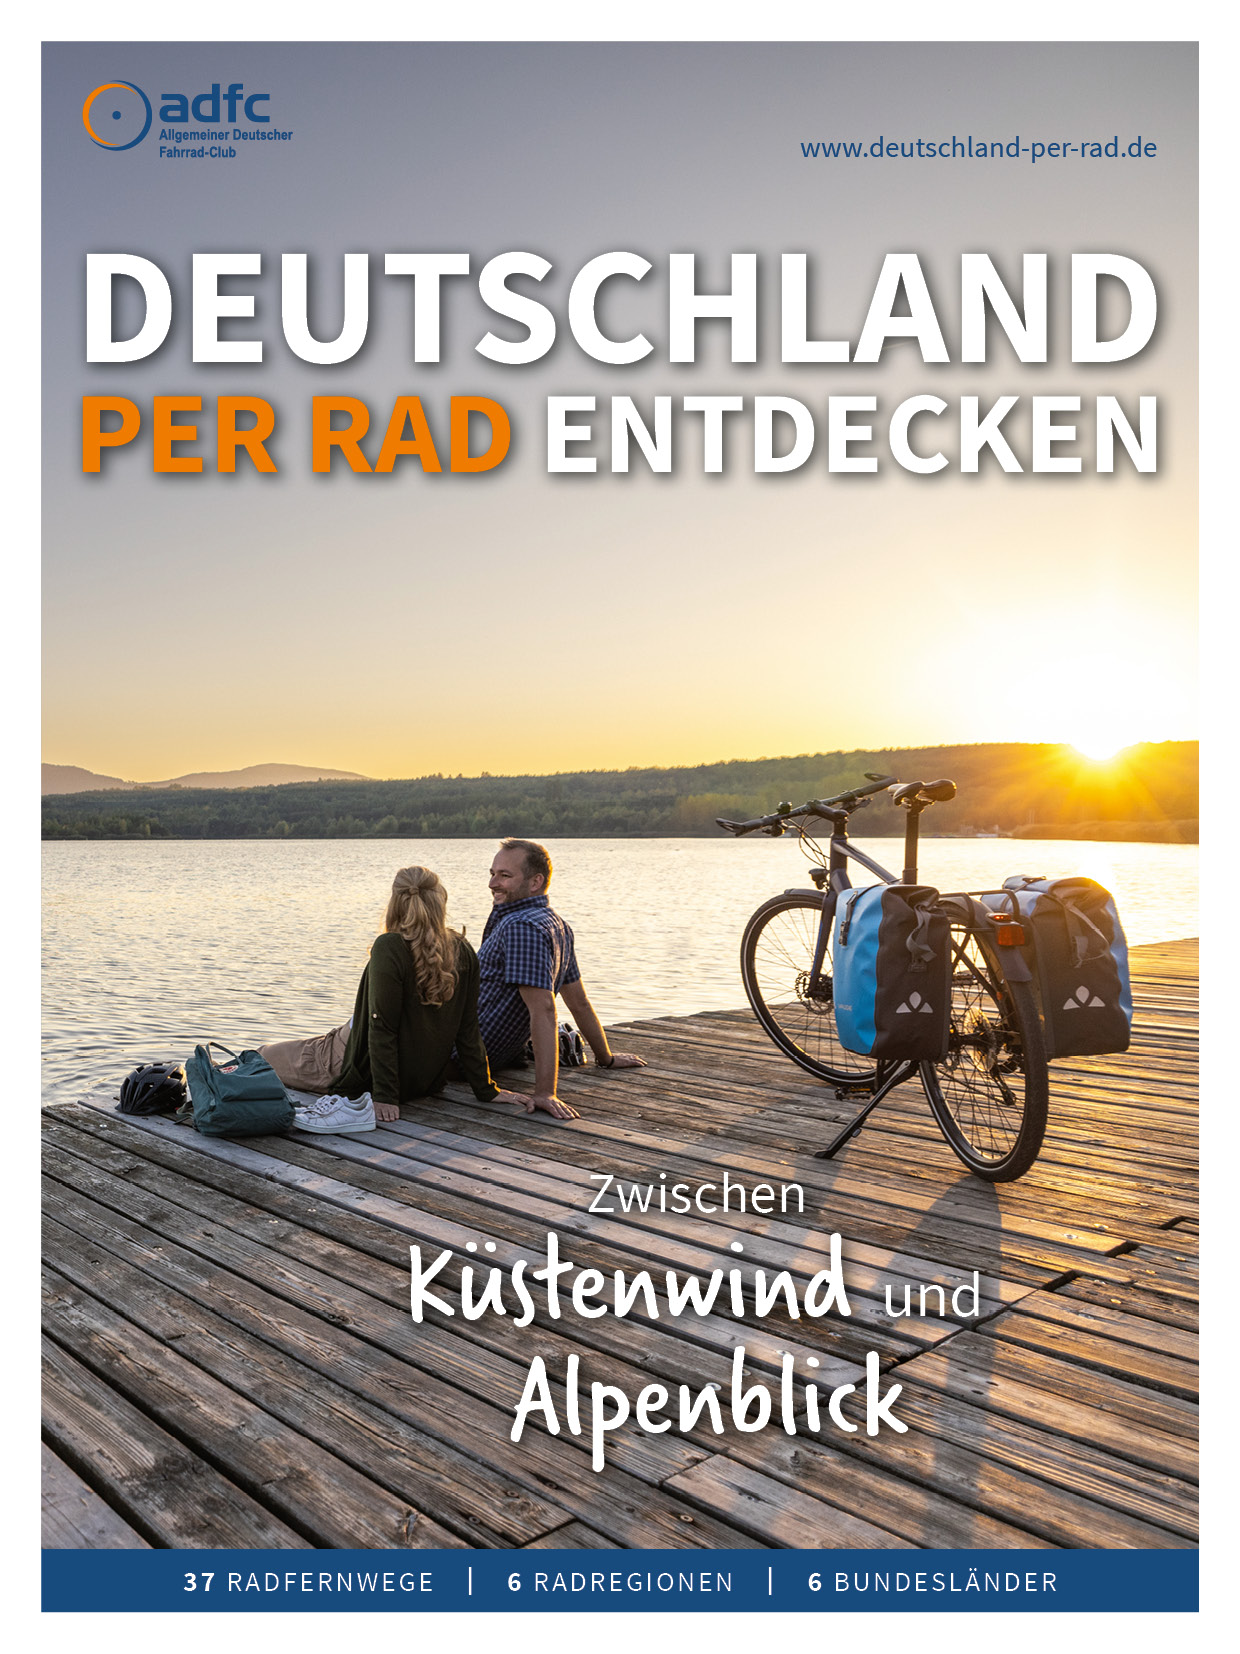 Fahrrad Radio in Niedersachsen - Apen, Freunde und Freizeitpartner finden